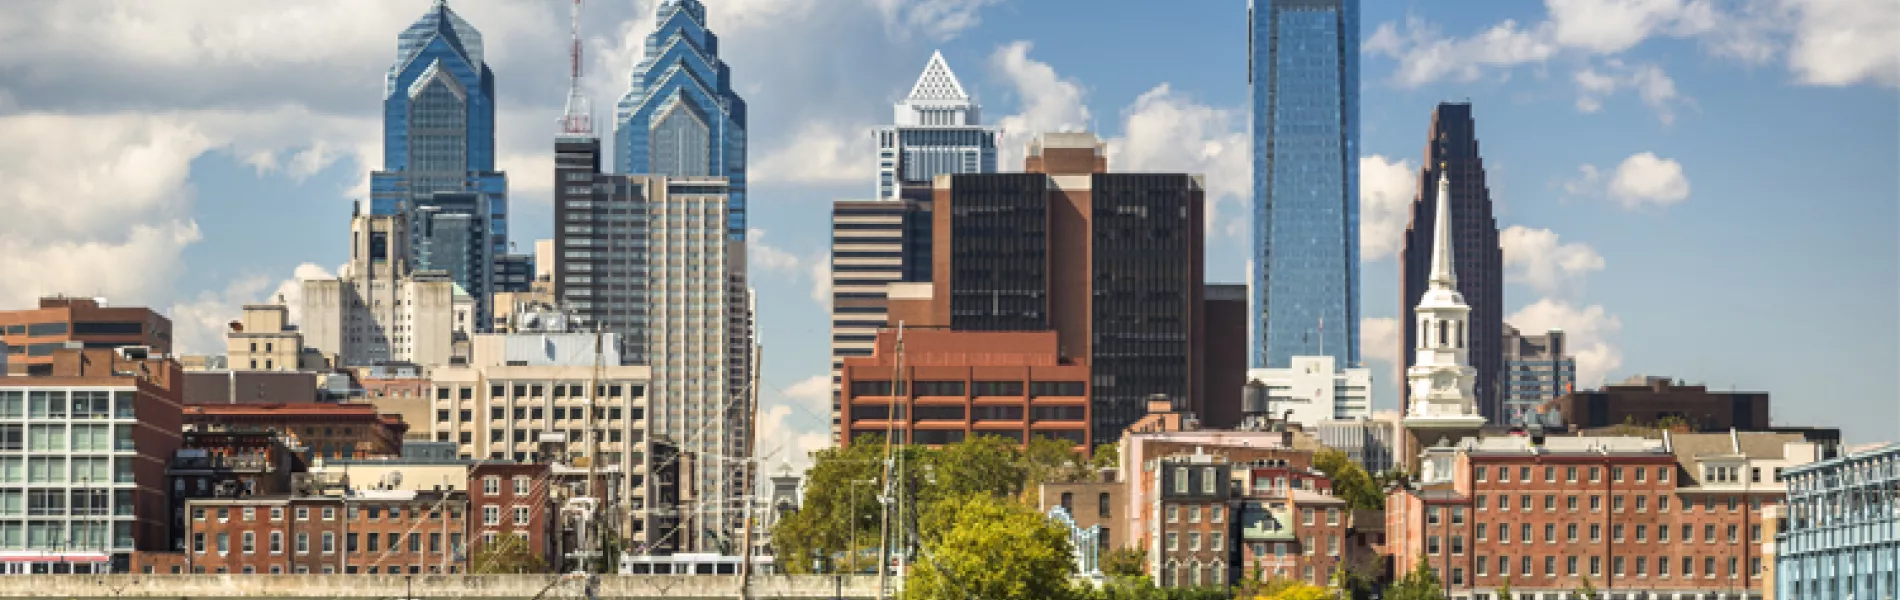 Philadelphia Skyline - 2018 ISPE Annual Meeting & Expo Host City